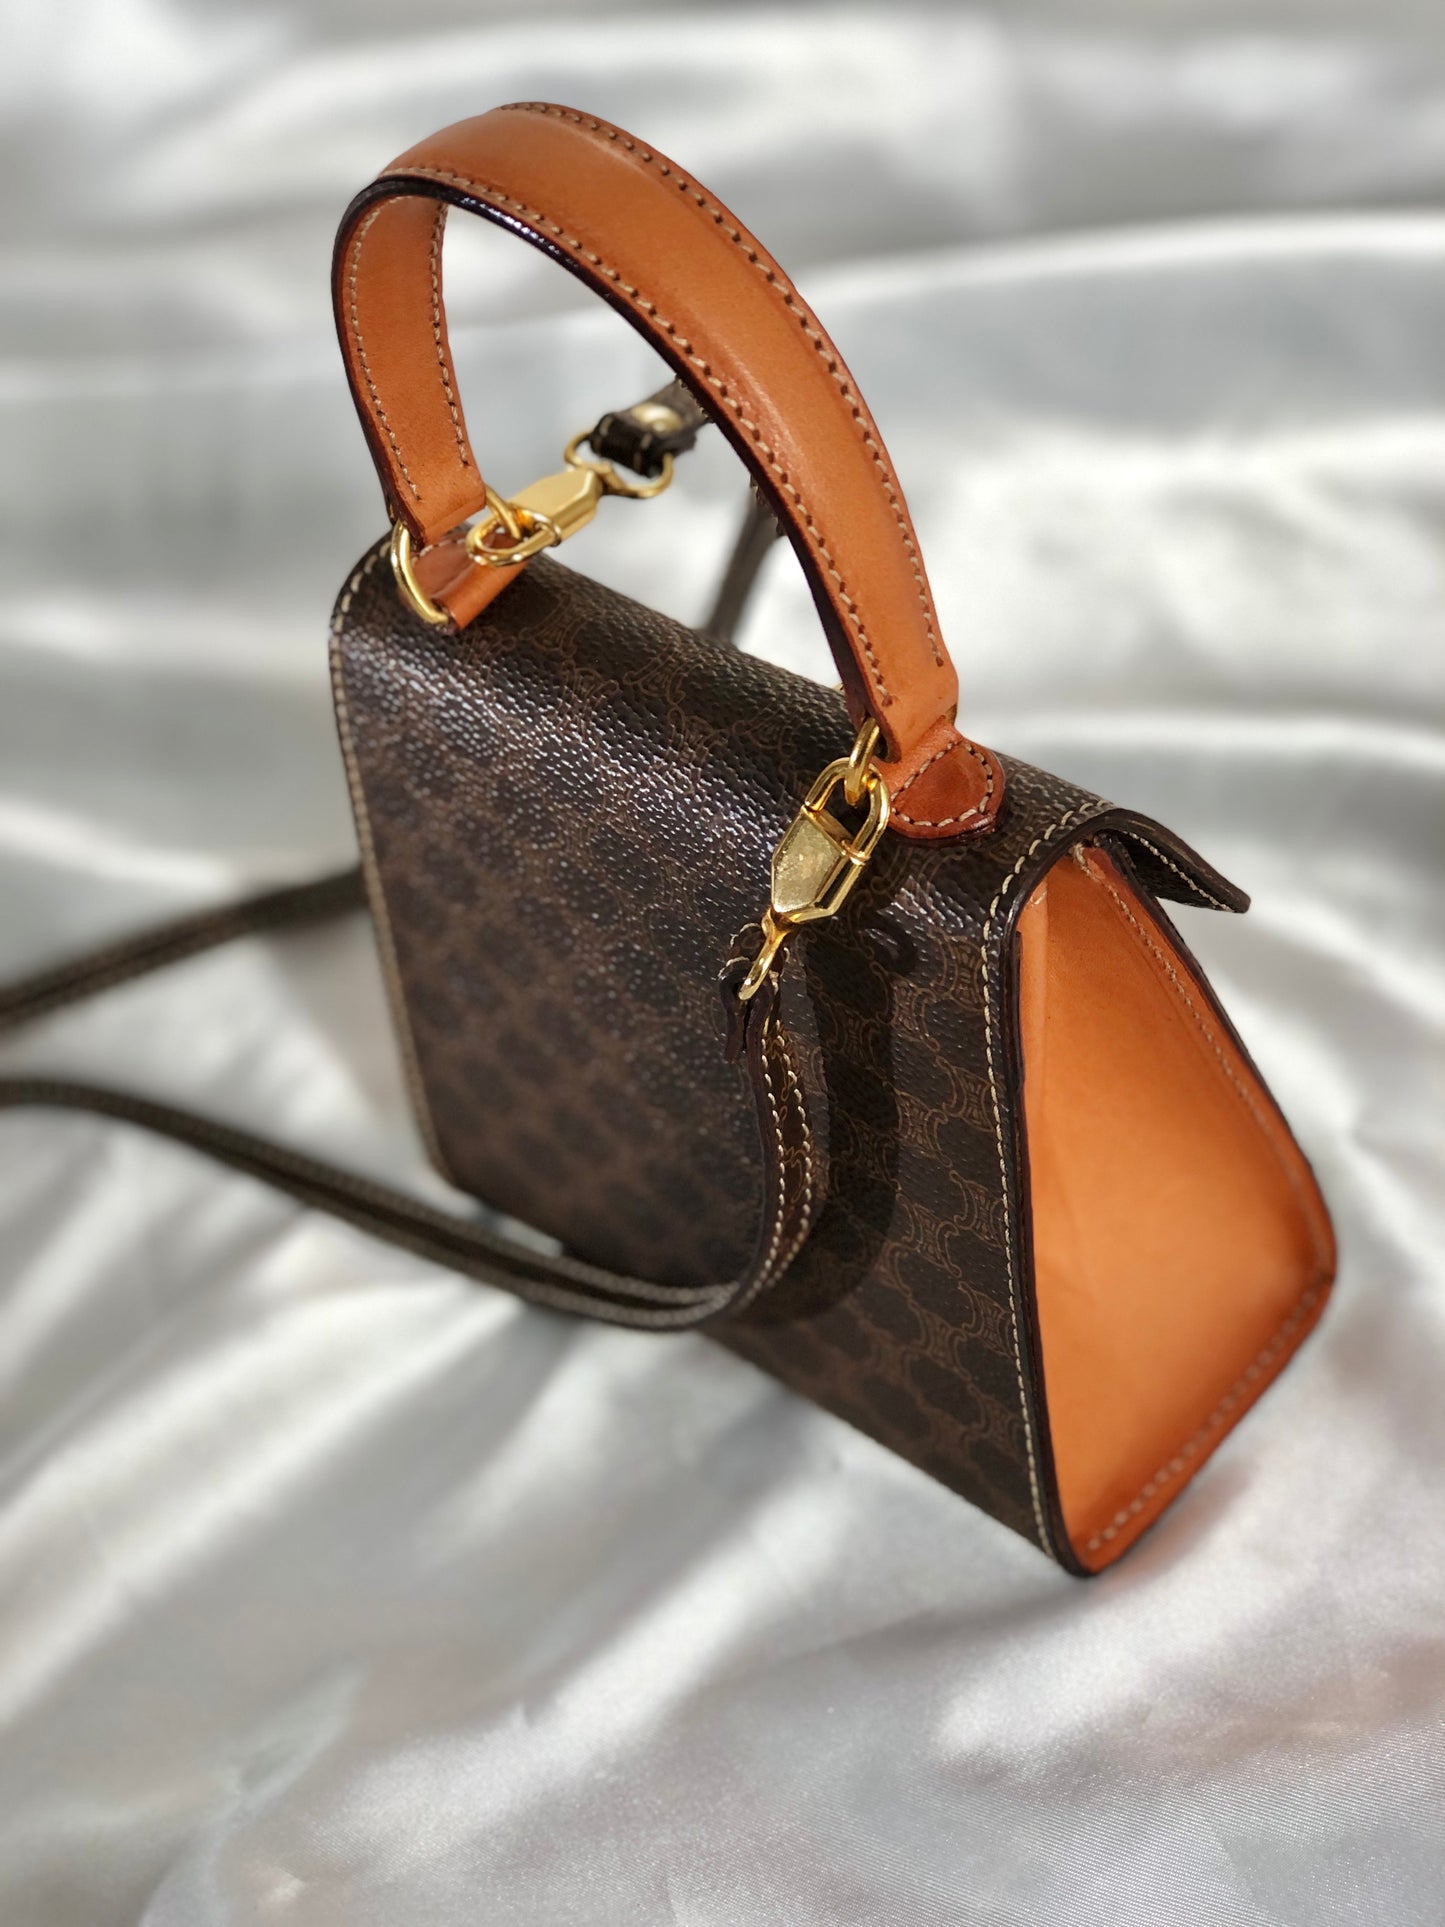 CELINE Macadam Gancini Top handle Handbag Shoulder bag 2way Brown Old CELINE Vintage ummetd